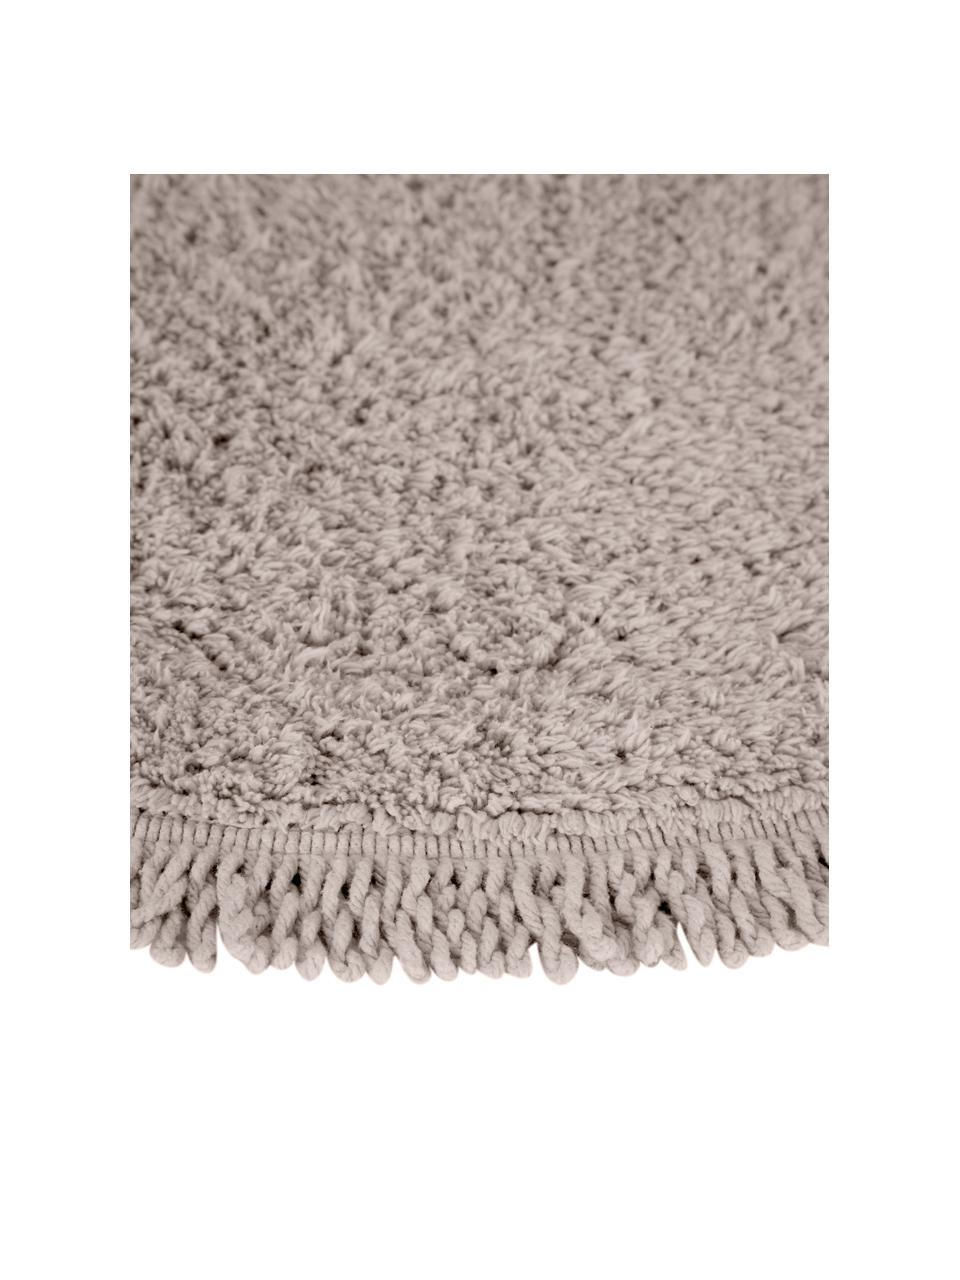 Tappeto bagno rotondo in cotone Loose, 100% cotone, Beige, Ø 70 cm